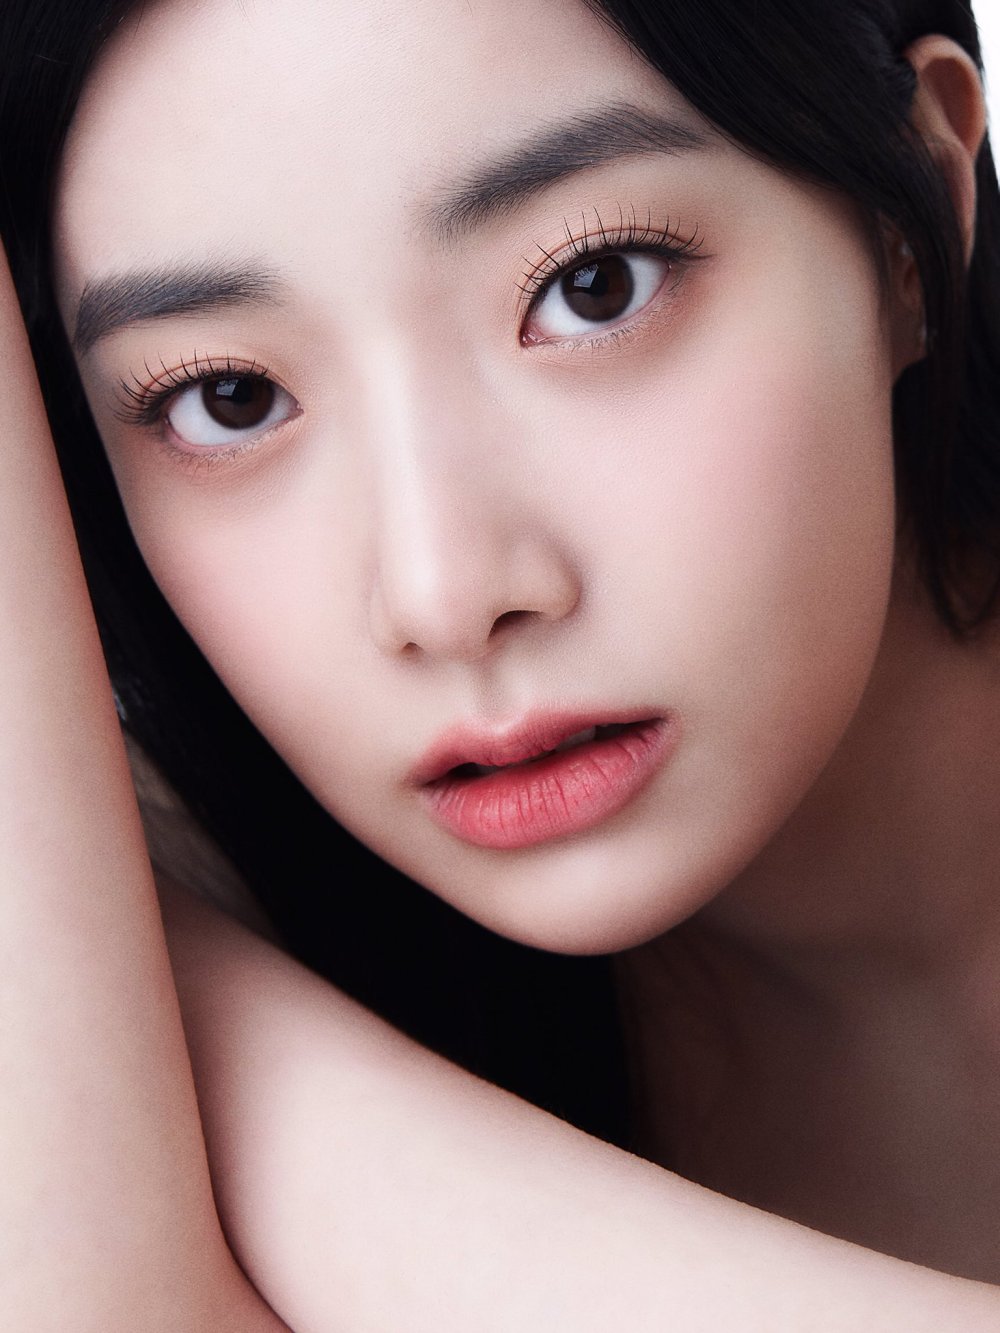 李玹珠 Sexy and Hottest Photos , Latest Pics